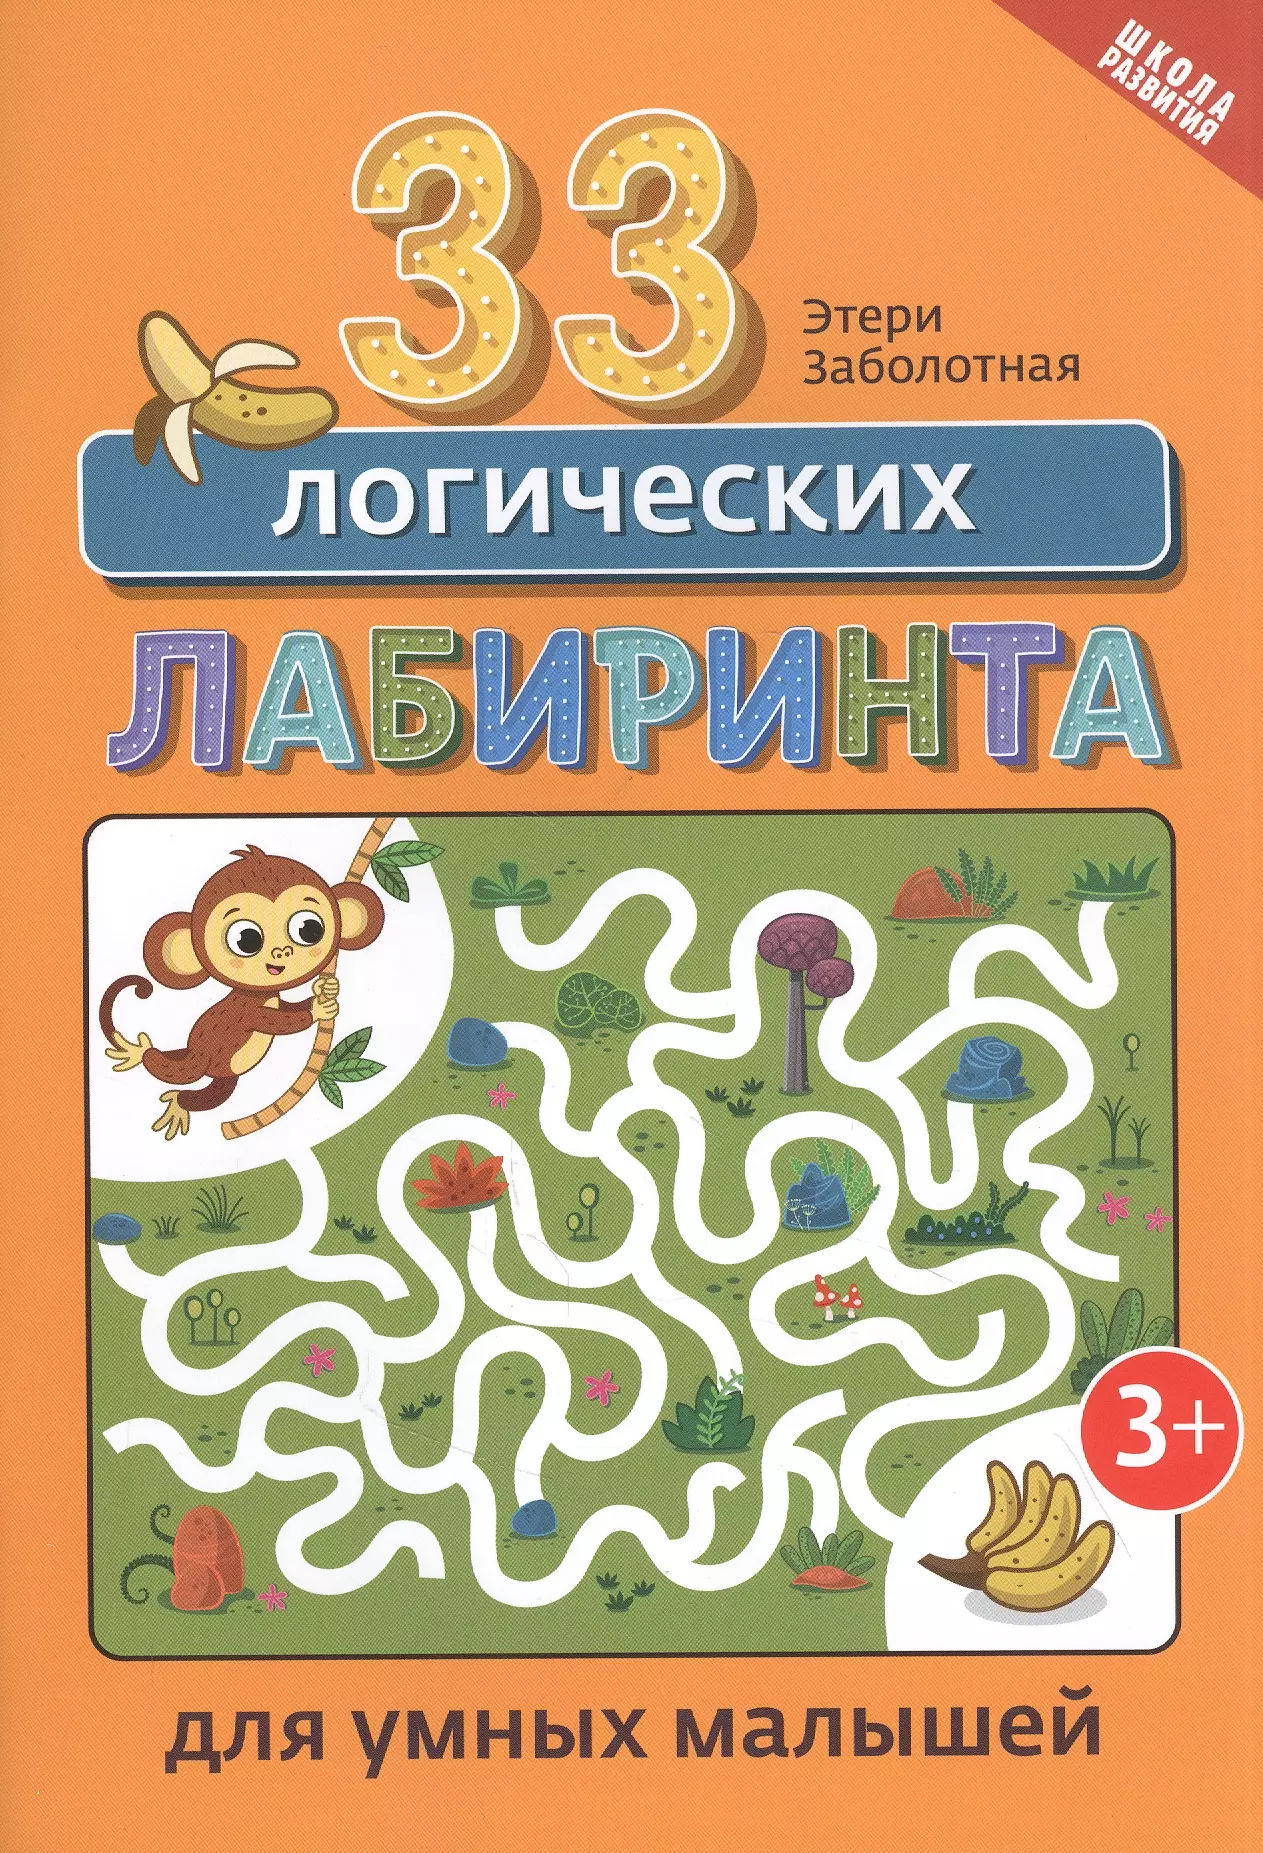 Заболотная Этери Николаевна - 33 логических лабиринта для умных малышей